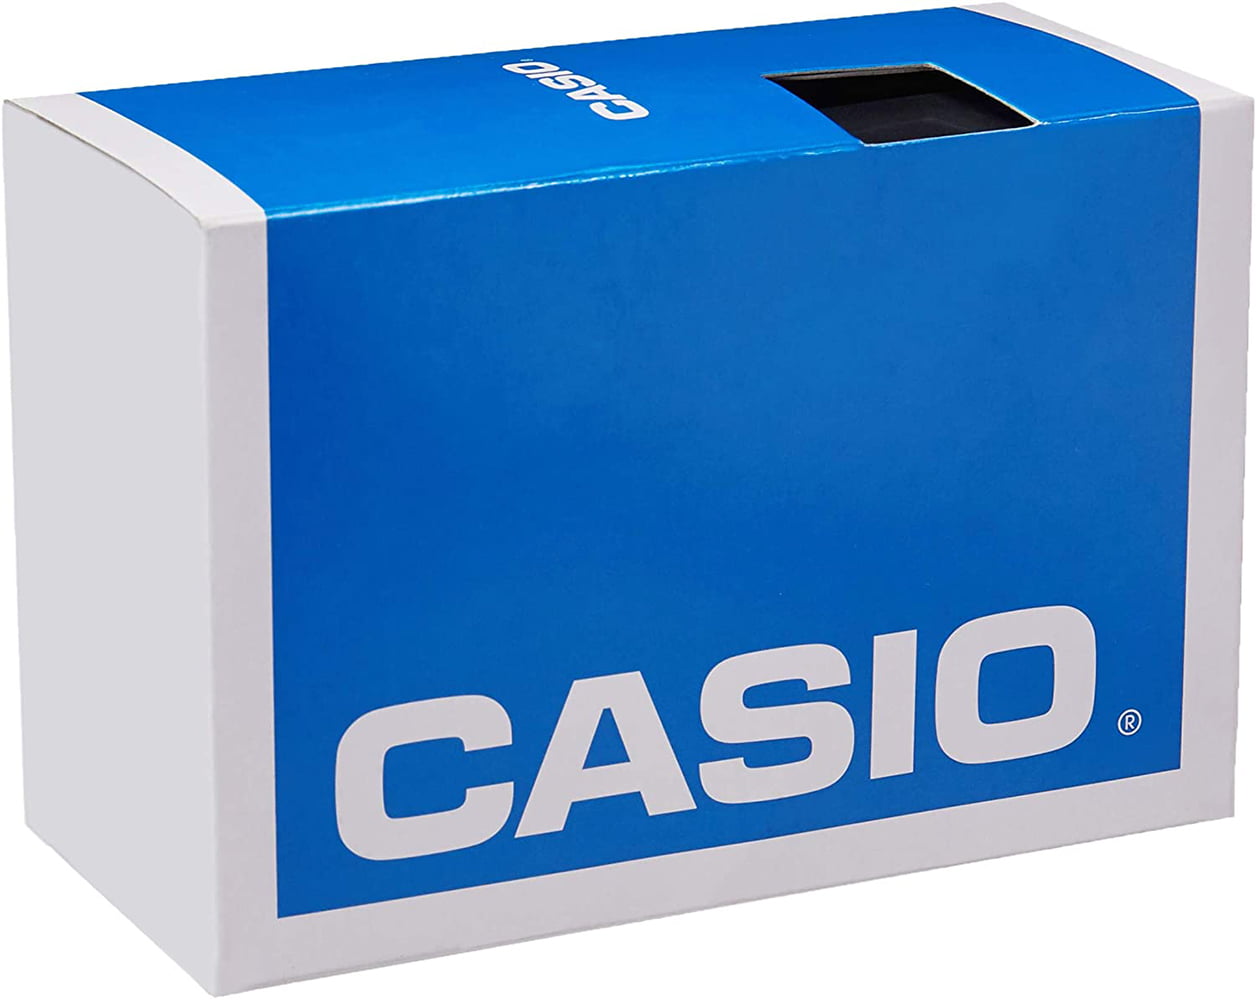 Buy Casio Men's Digital 10-Year Battery Dual Time 100m Black Resin ...